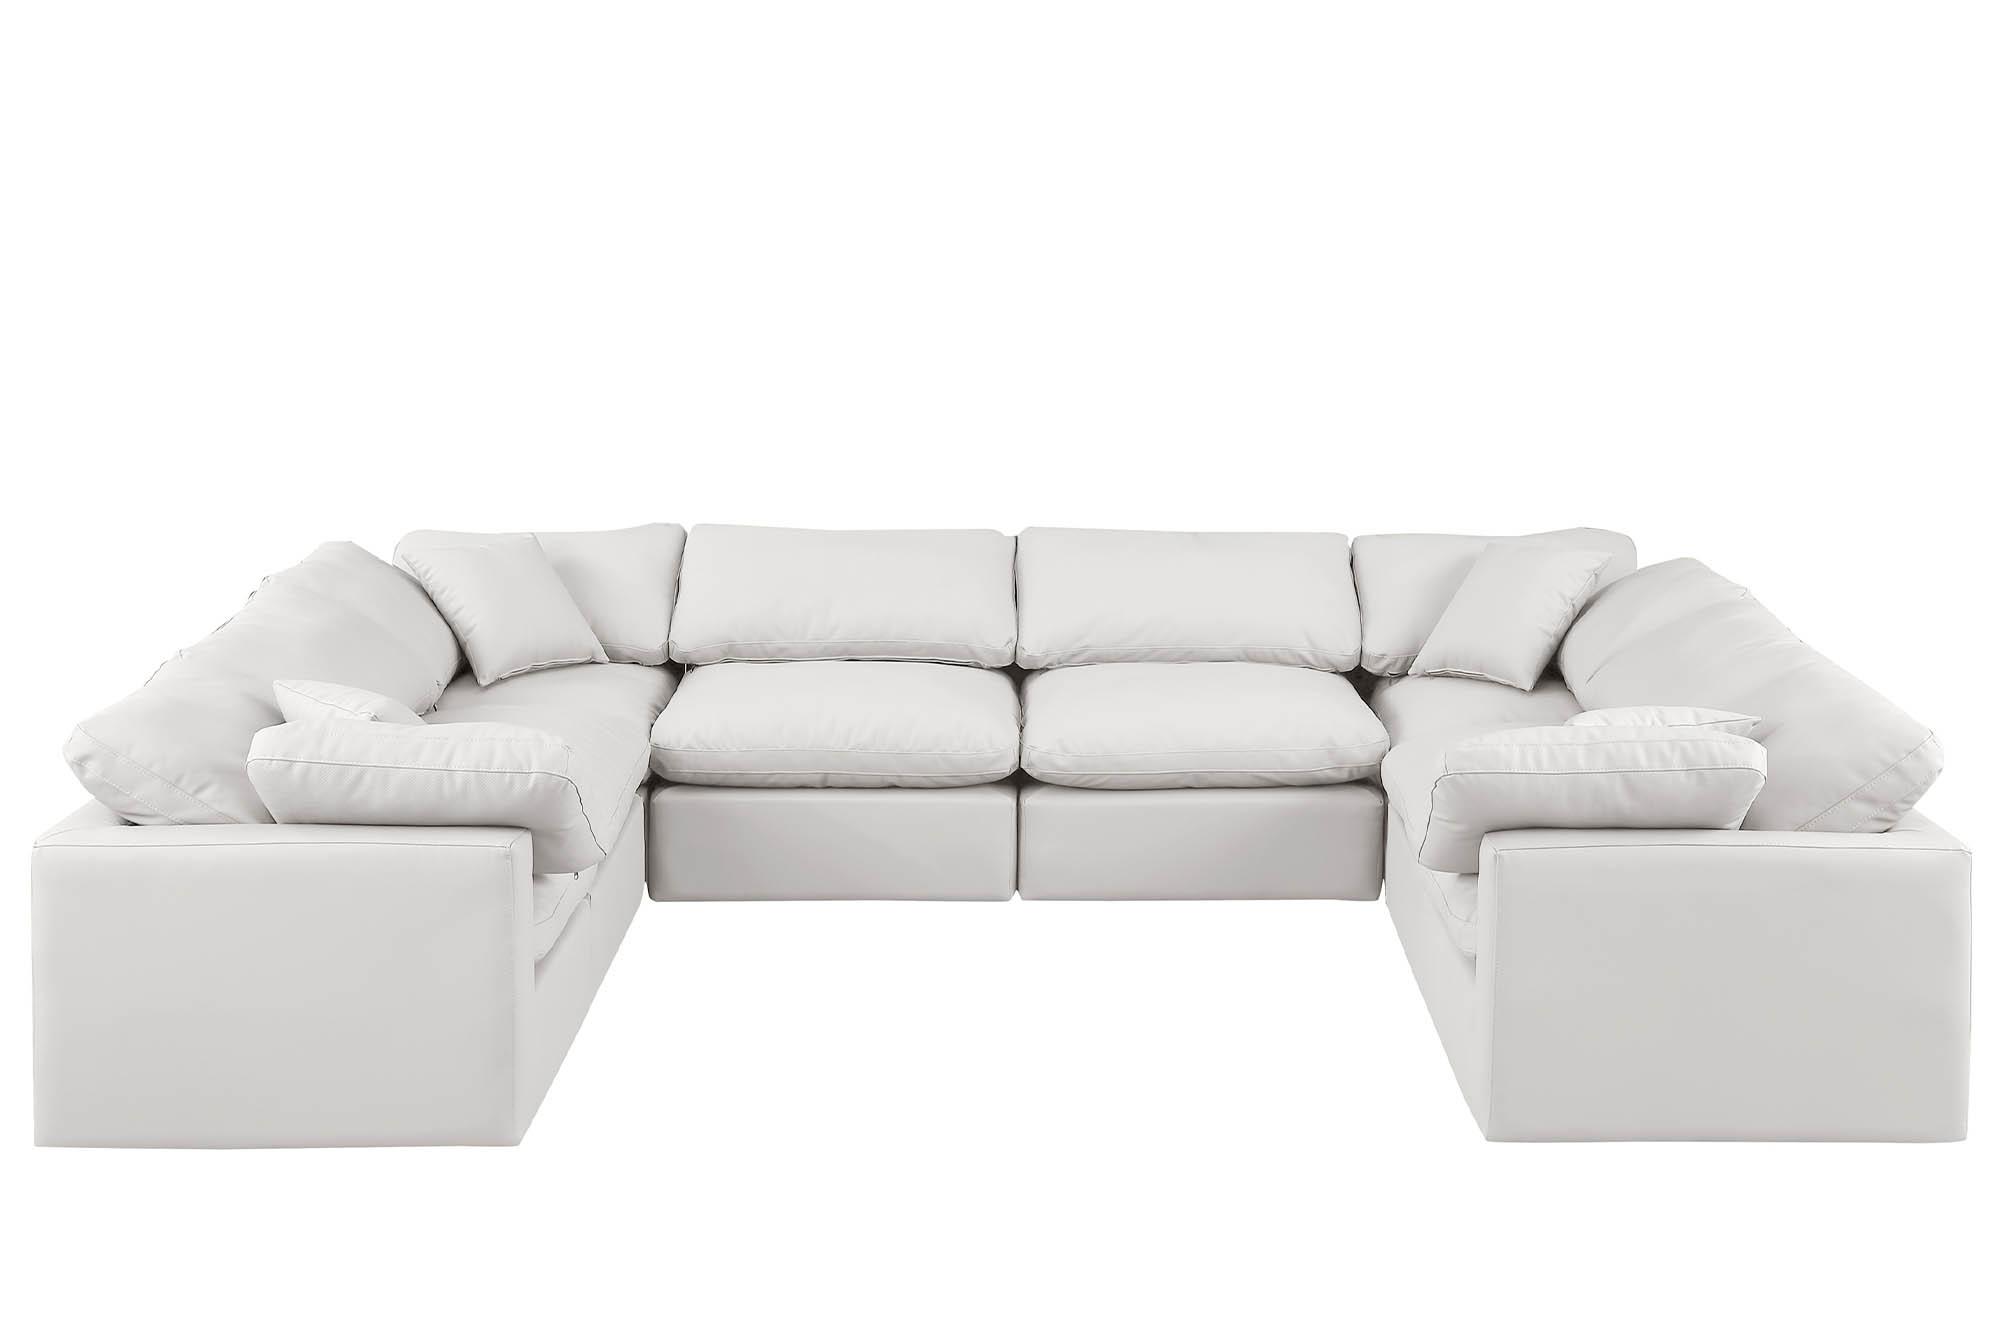 

    
Meridian Furniture INDULGE 146Cream-Sec8A Modular Sectional Sofa Cream 146Cream-Sec8A
